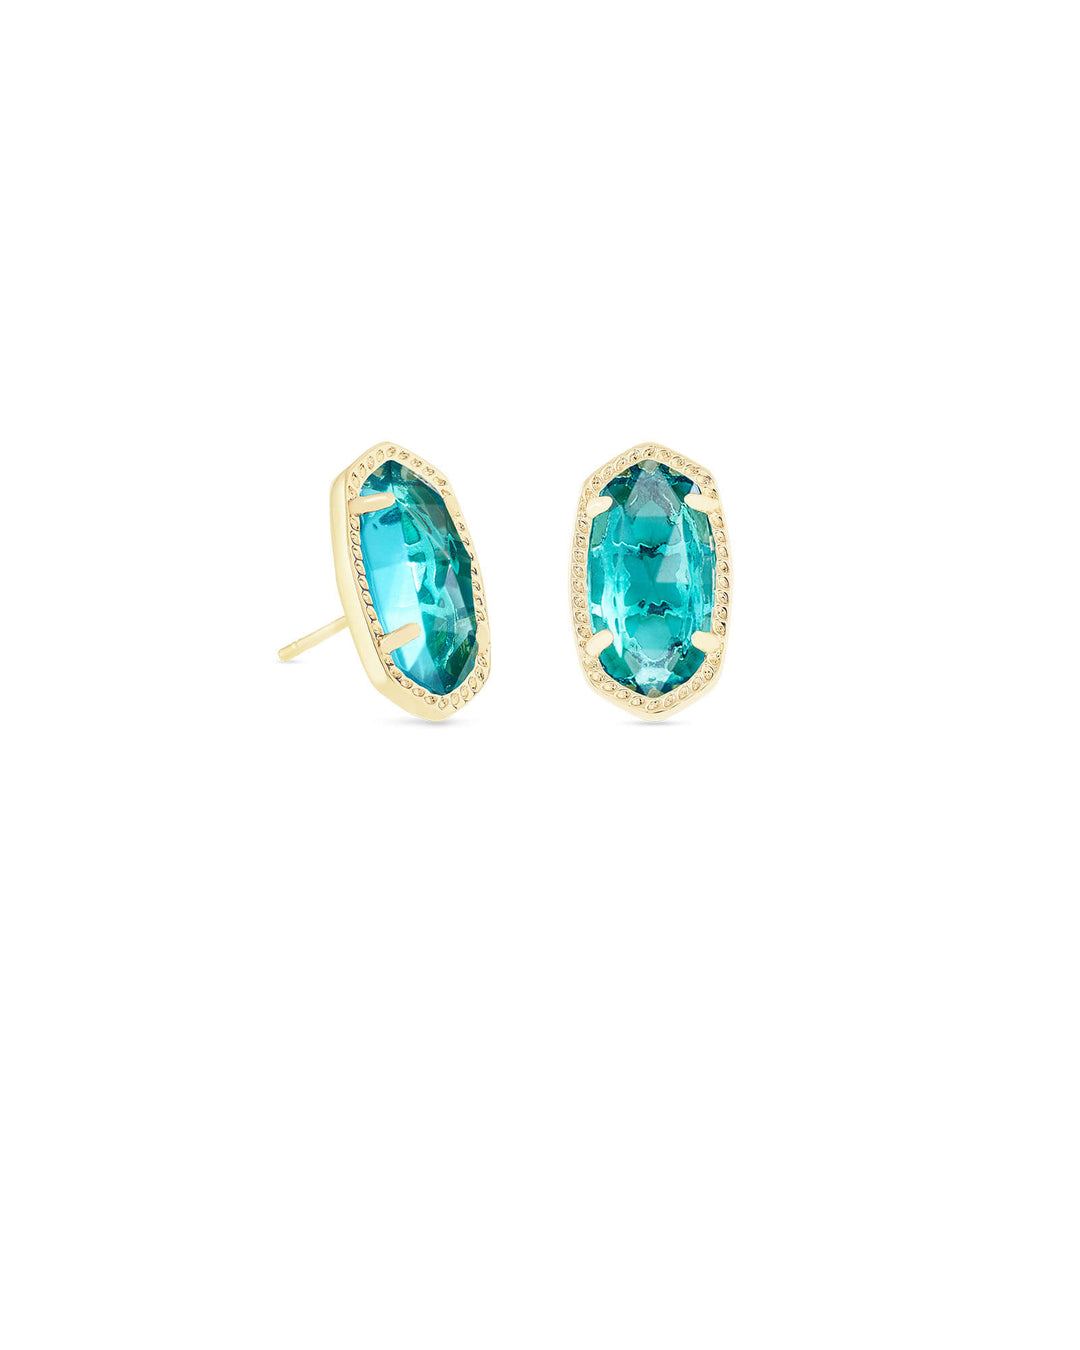 Kendra Scott Ellie Gold Stud Earrings in London Blue